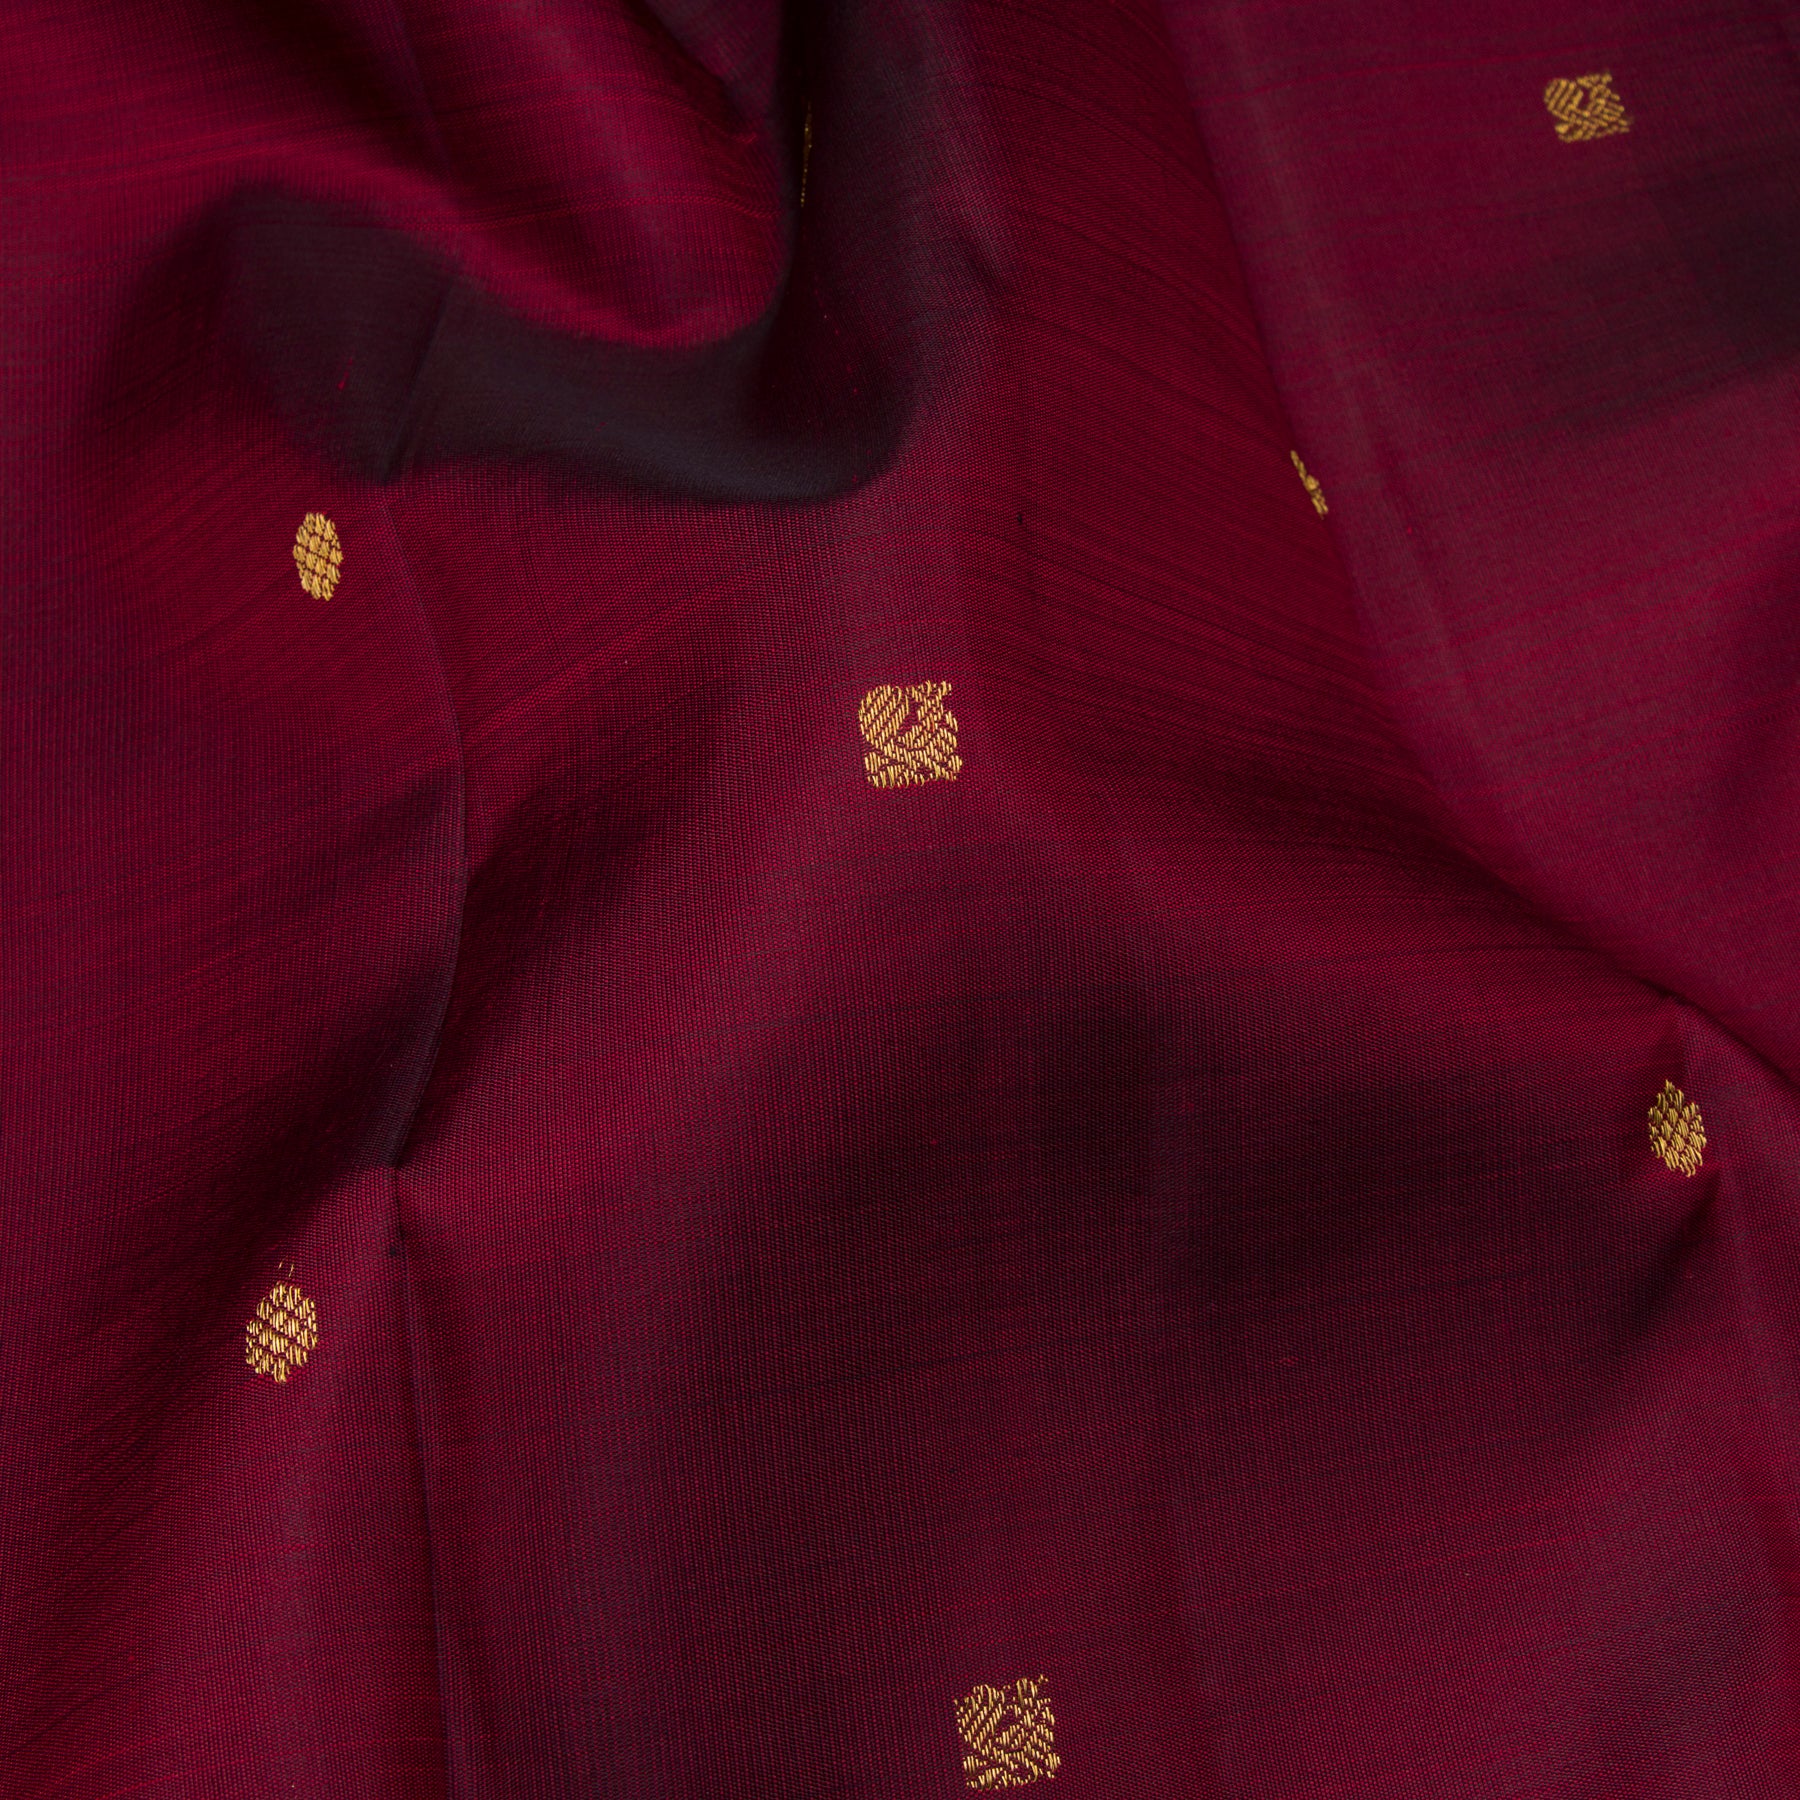 Kanakavalli Kanjivaram Silk Sari 23-611-HS001-14472 - Fabric View